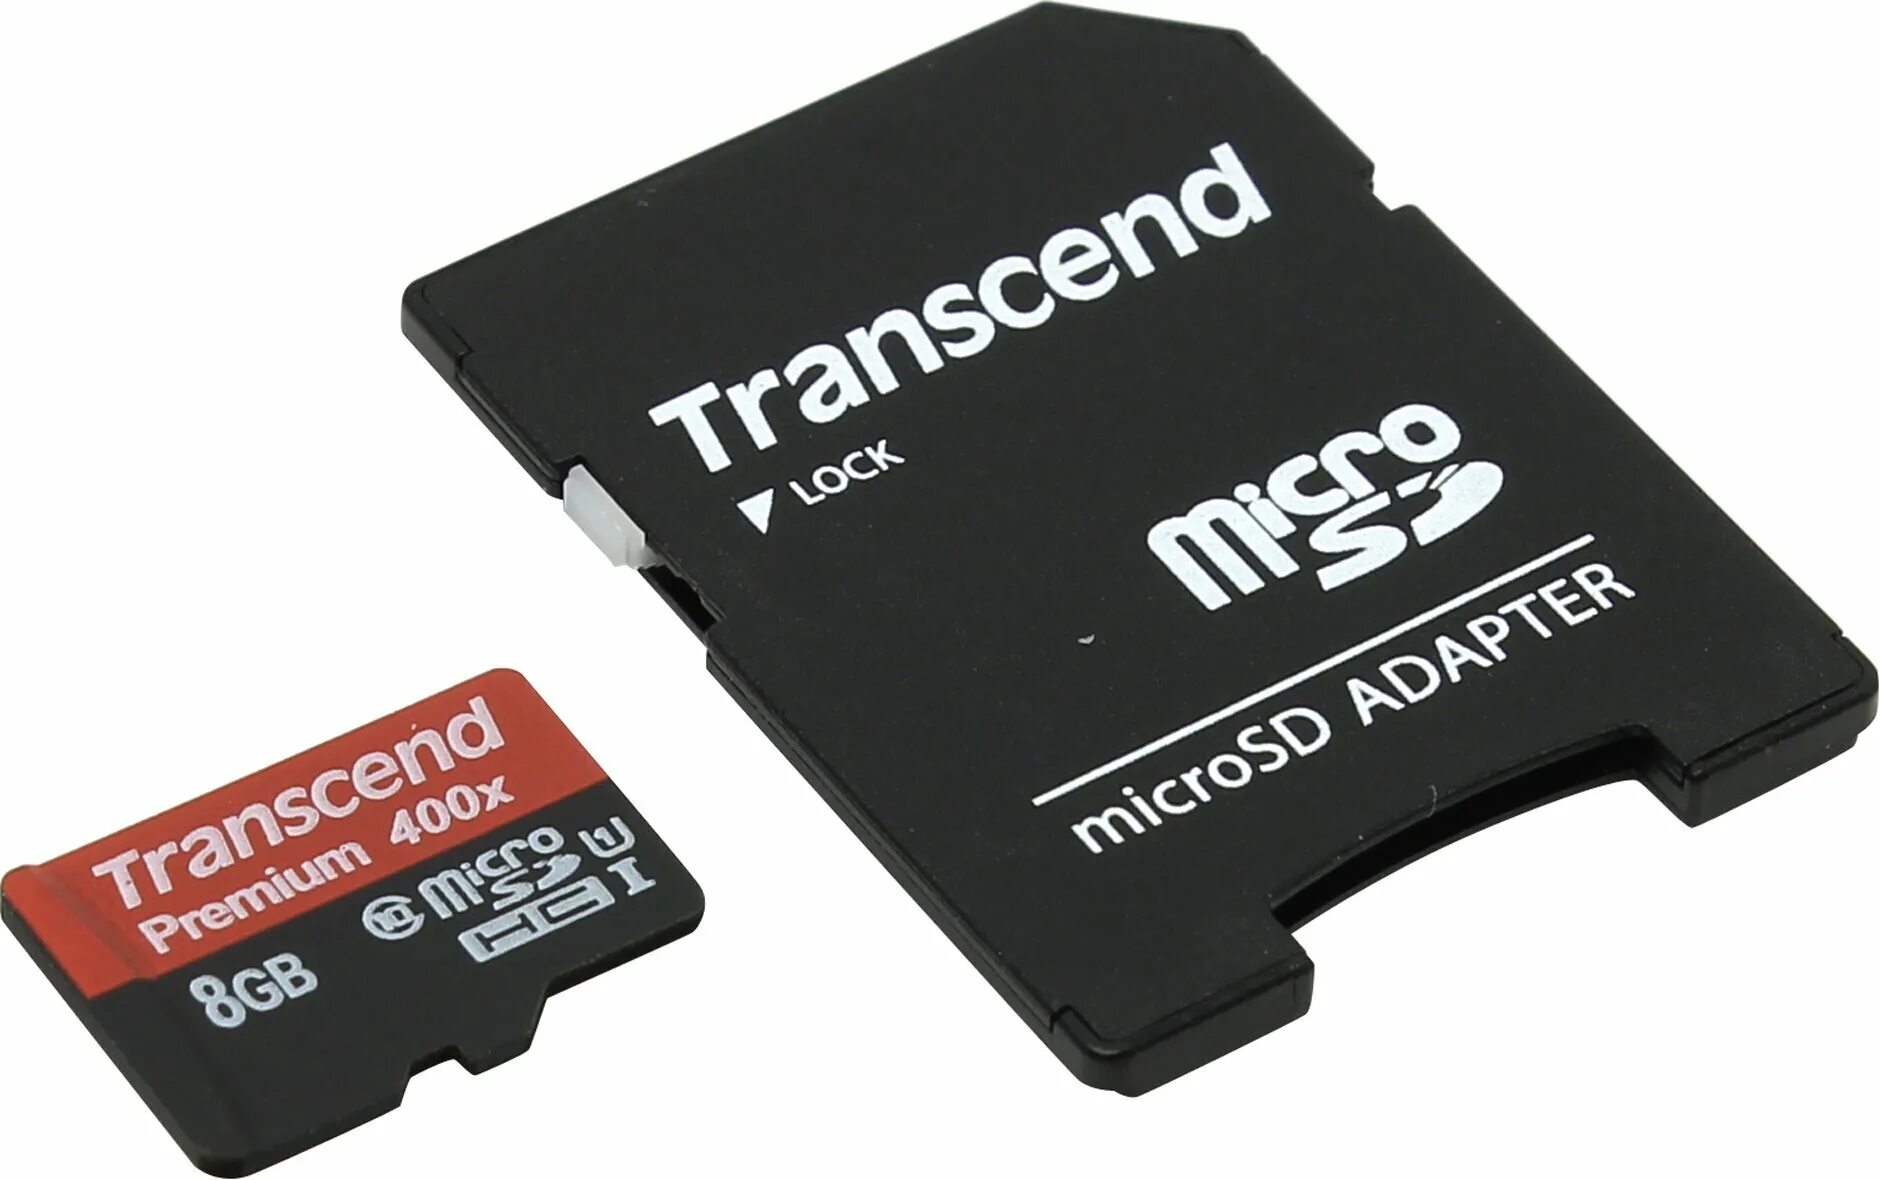 Transcend microsdhc. Память Transcend (MICROSDHC) 8gb + адаптер. Карта памяти Transcend 8 ГБ. Transcend SATA карта памяти. Карта памяти Leef Pro MICROSDHC class 10 UHS-I u1 8gb + SD Adapter.